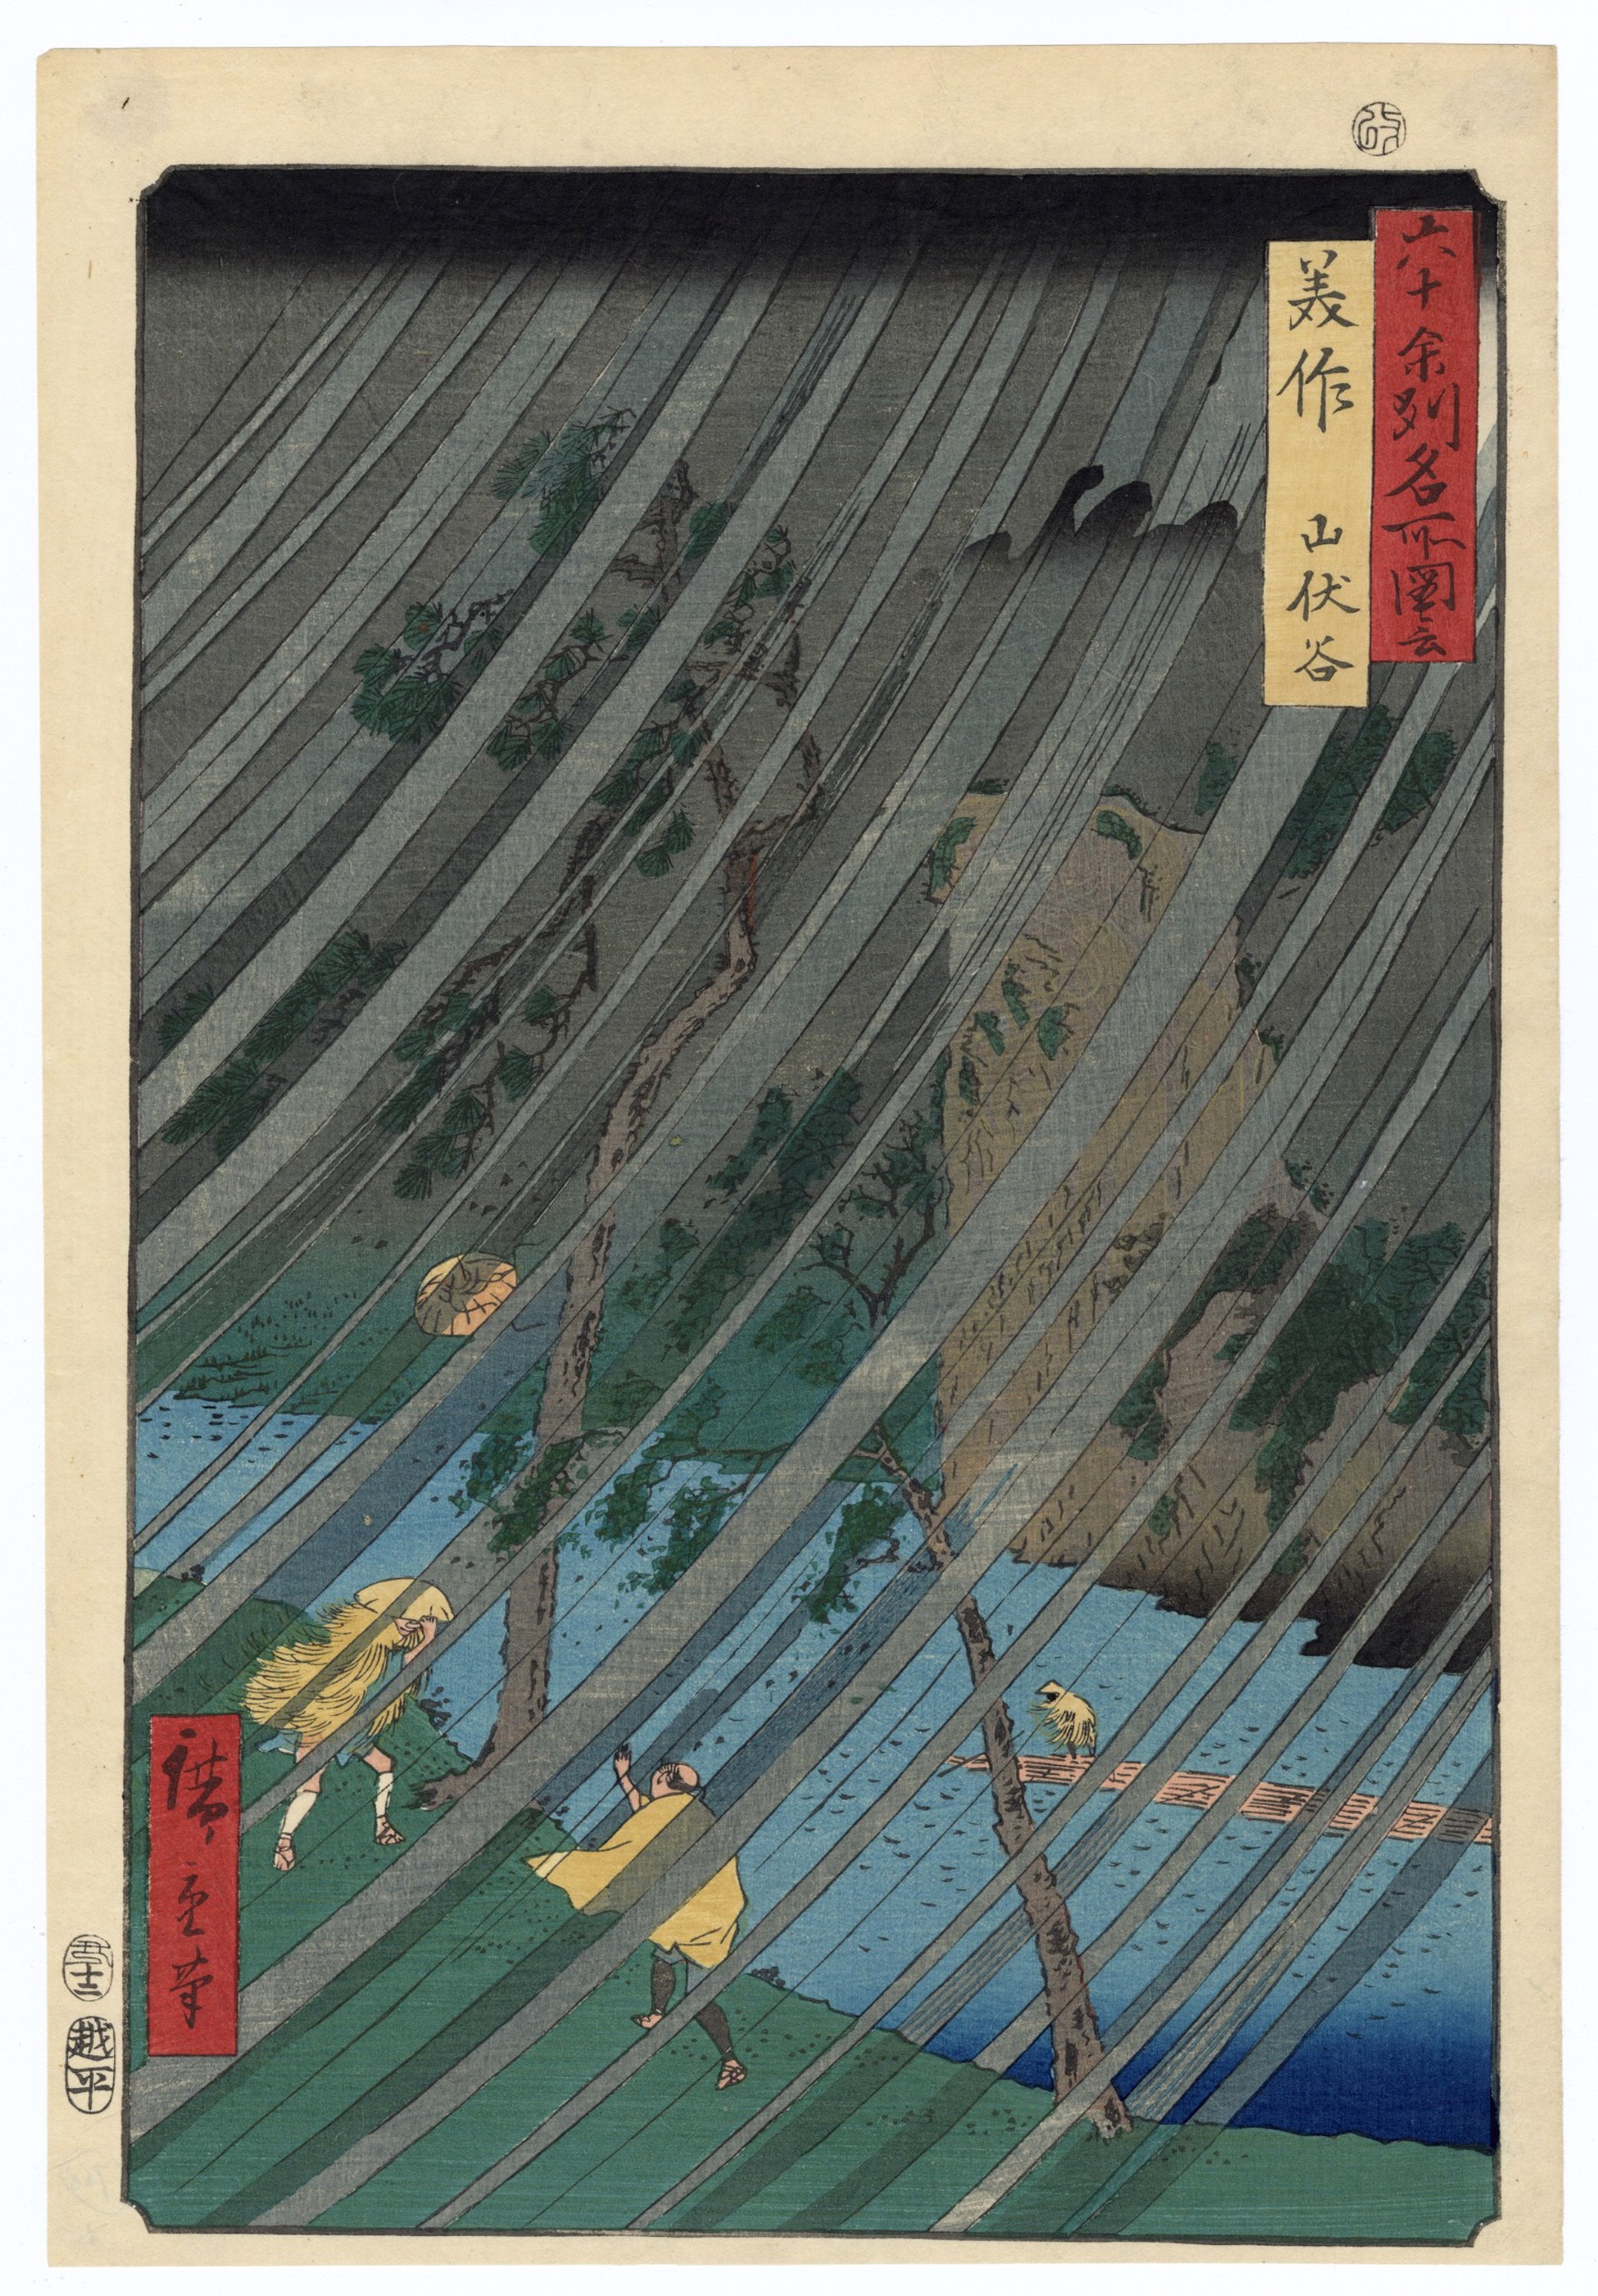 Yamabushidani, Mimasaka Province by Hiroshige